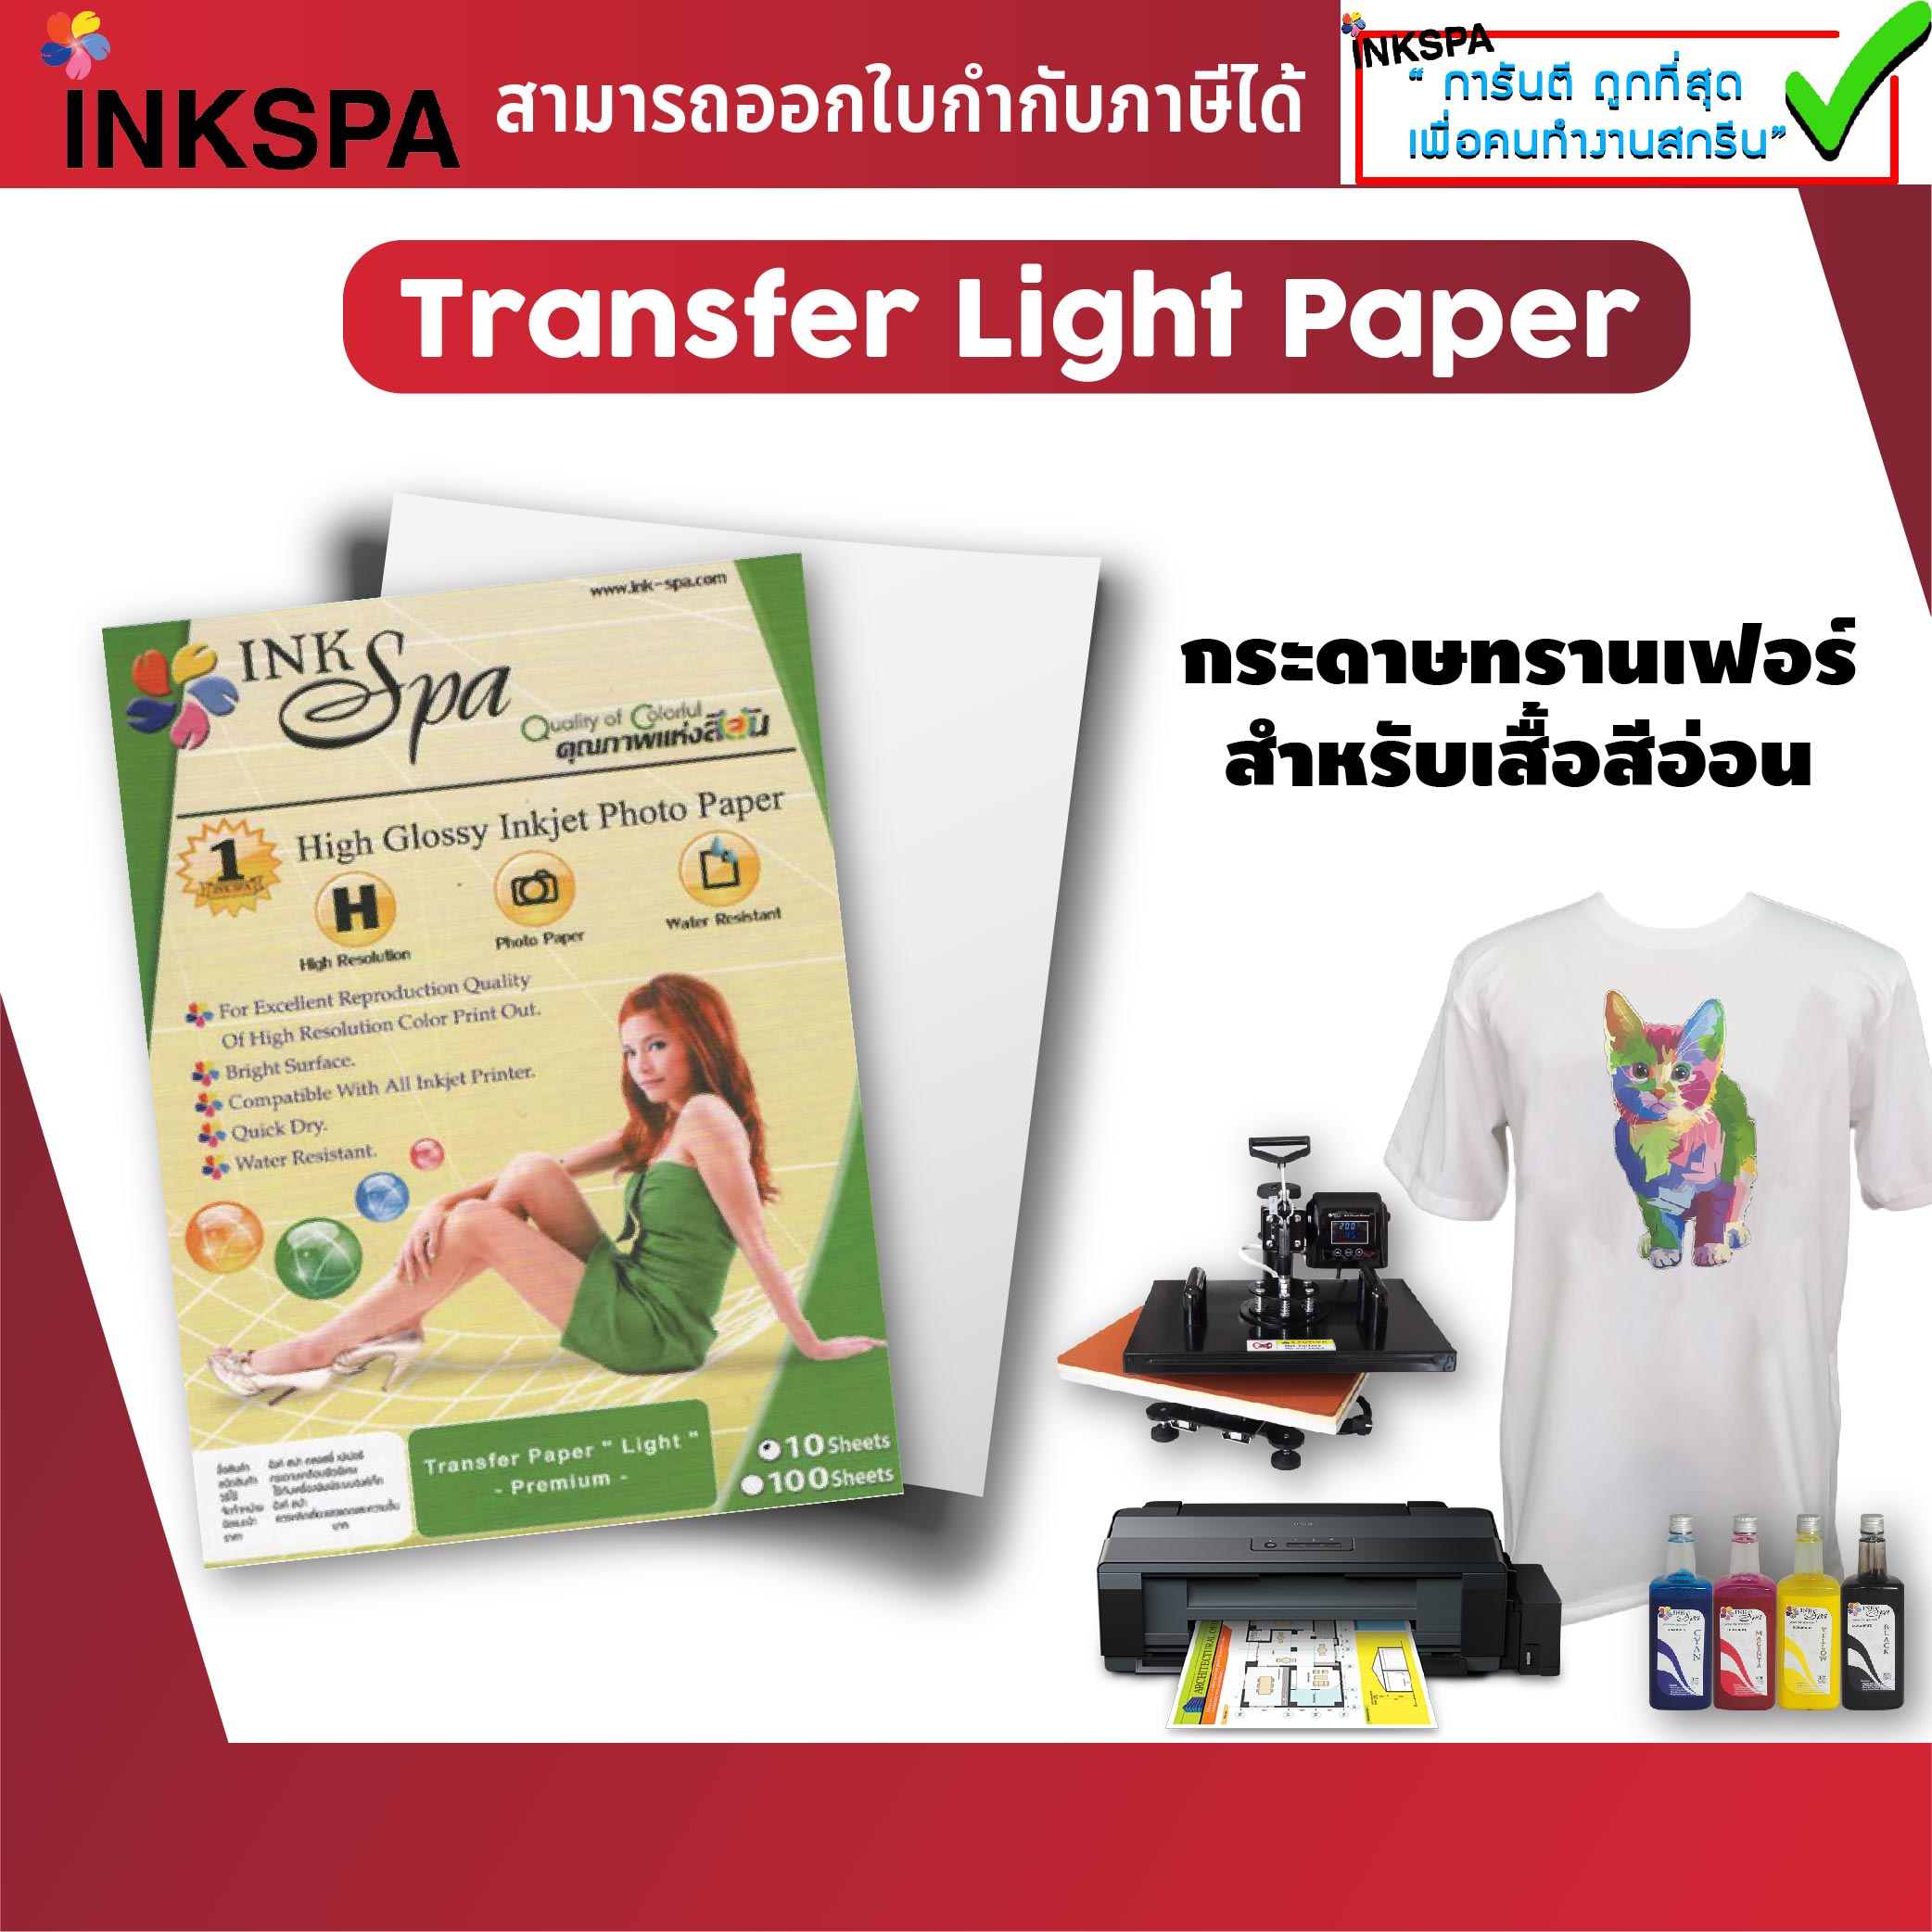 กระดาษ Transfer Light กระดาษพิมพ์ภาพ งานทรานเฟอร์ ขนาด A4/A3 Pack 10 สำหรับงานสกรีนรีด ทรานเฟอร์ผ้าสีอ่อน